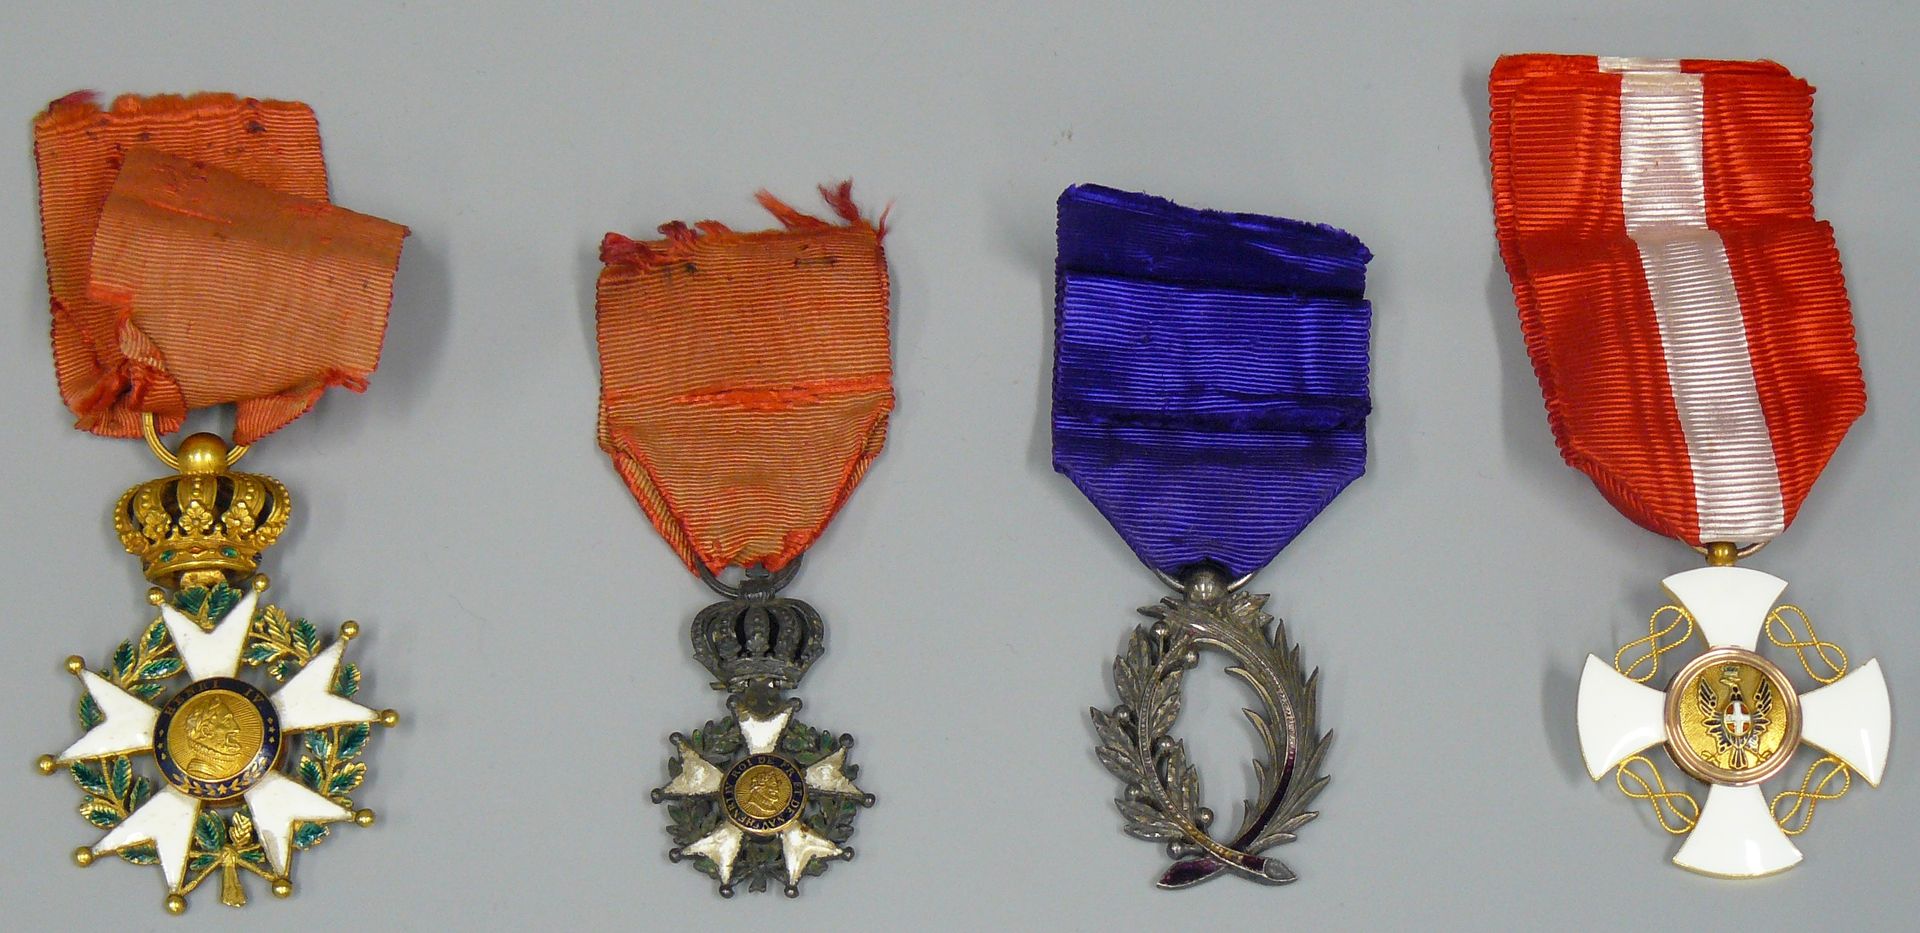 Null ein Satz von 4 Medaillen: eine Ehrenlegion der Juli-Monarchie mit abgenutzt&hellip;